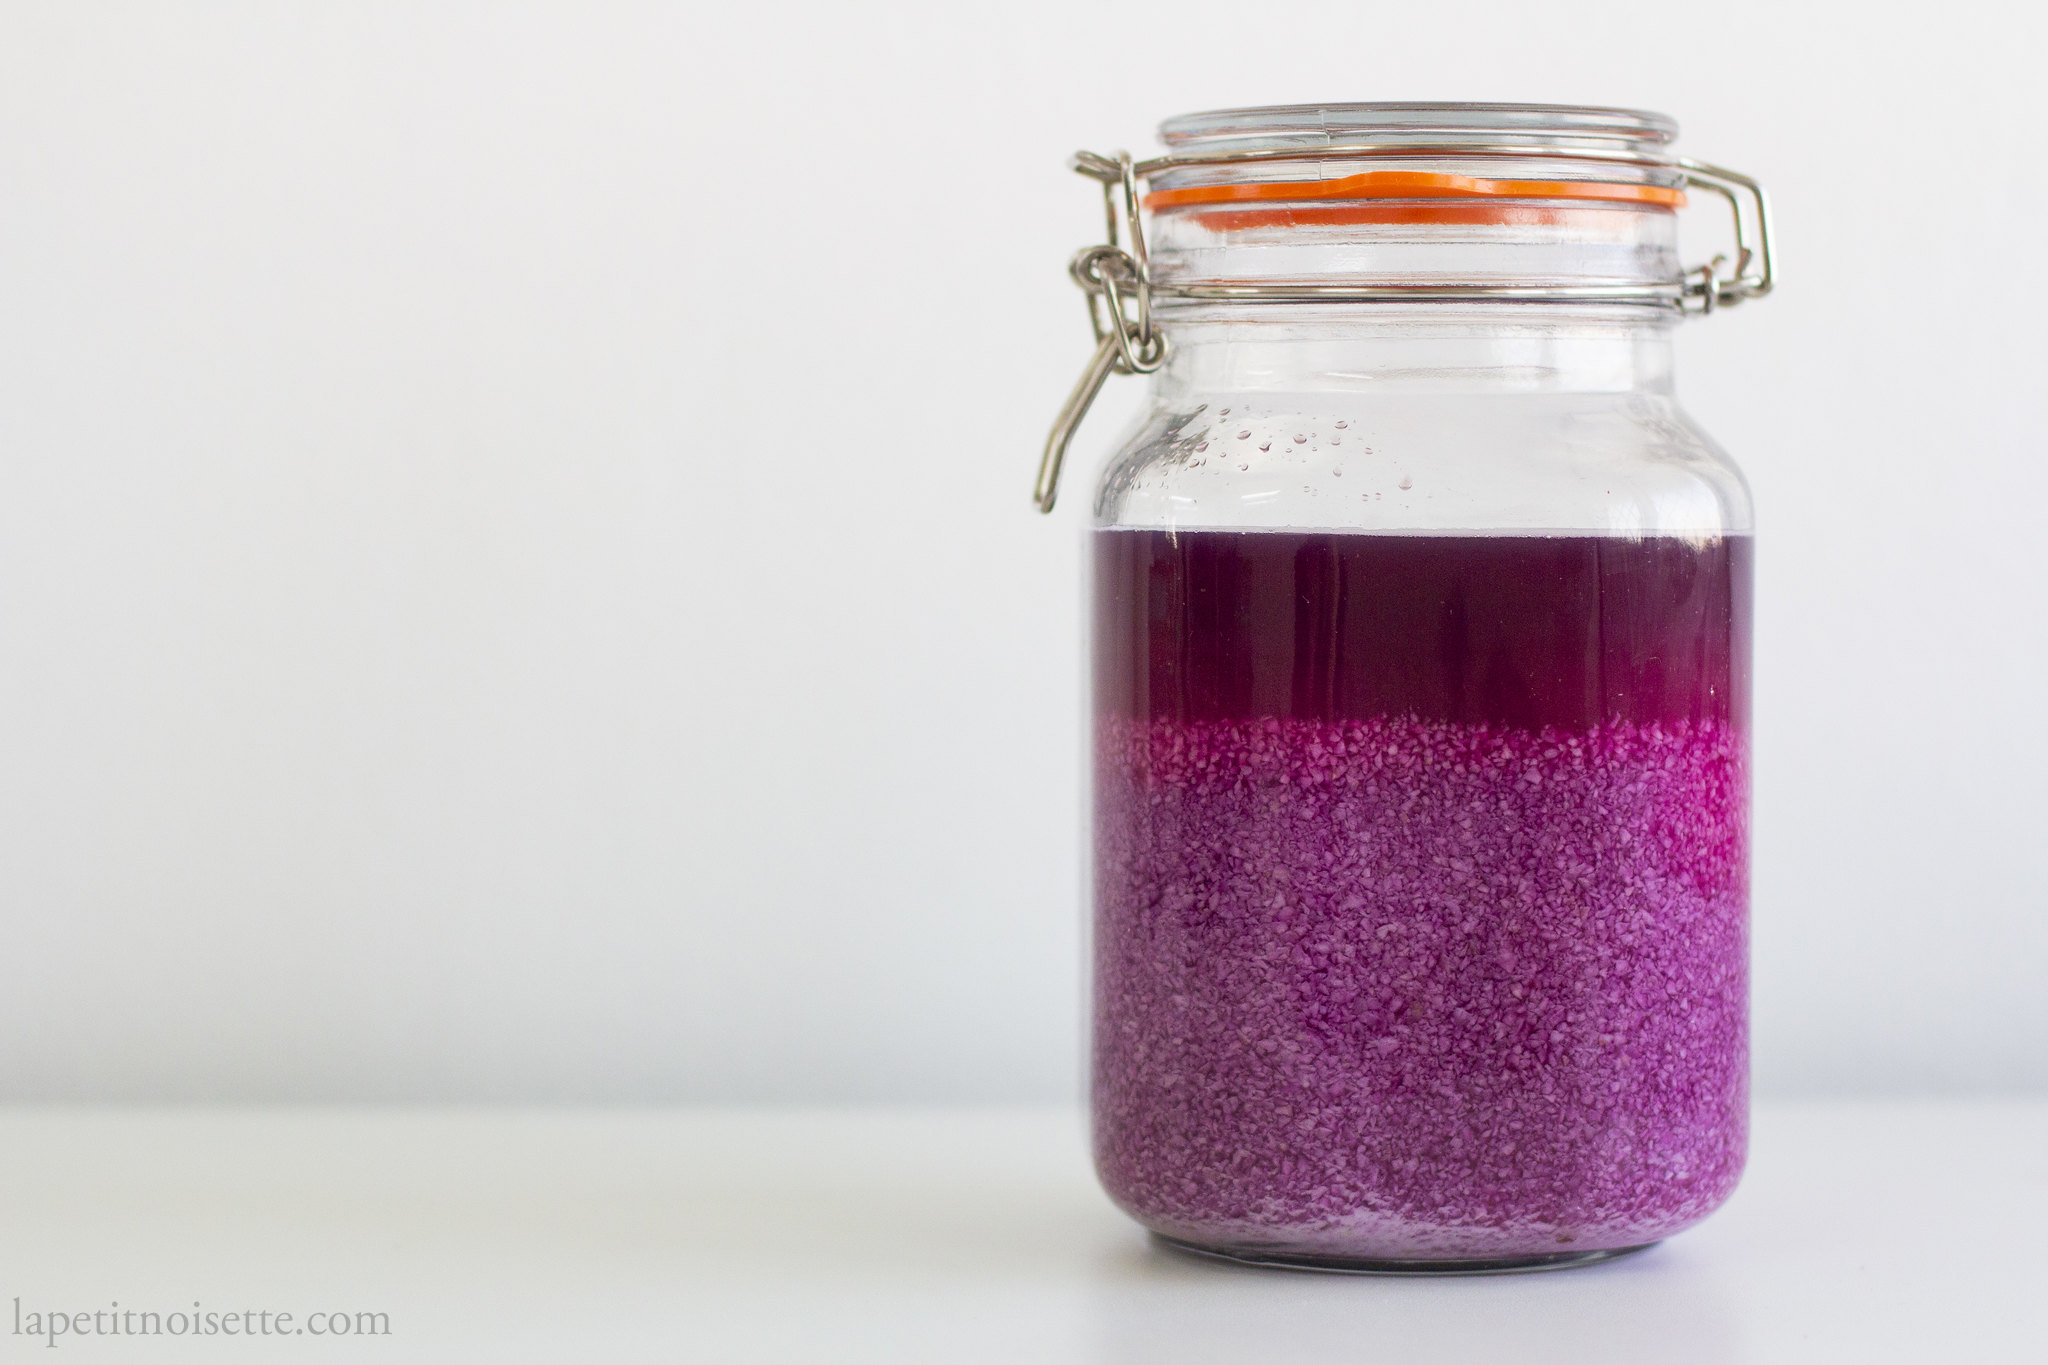 Purple sweet potato vinegar fermenting in a jar.